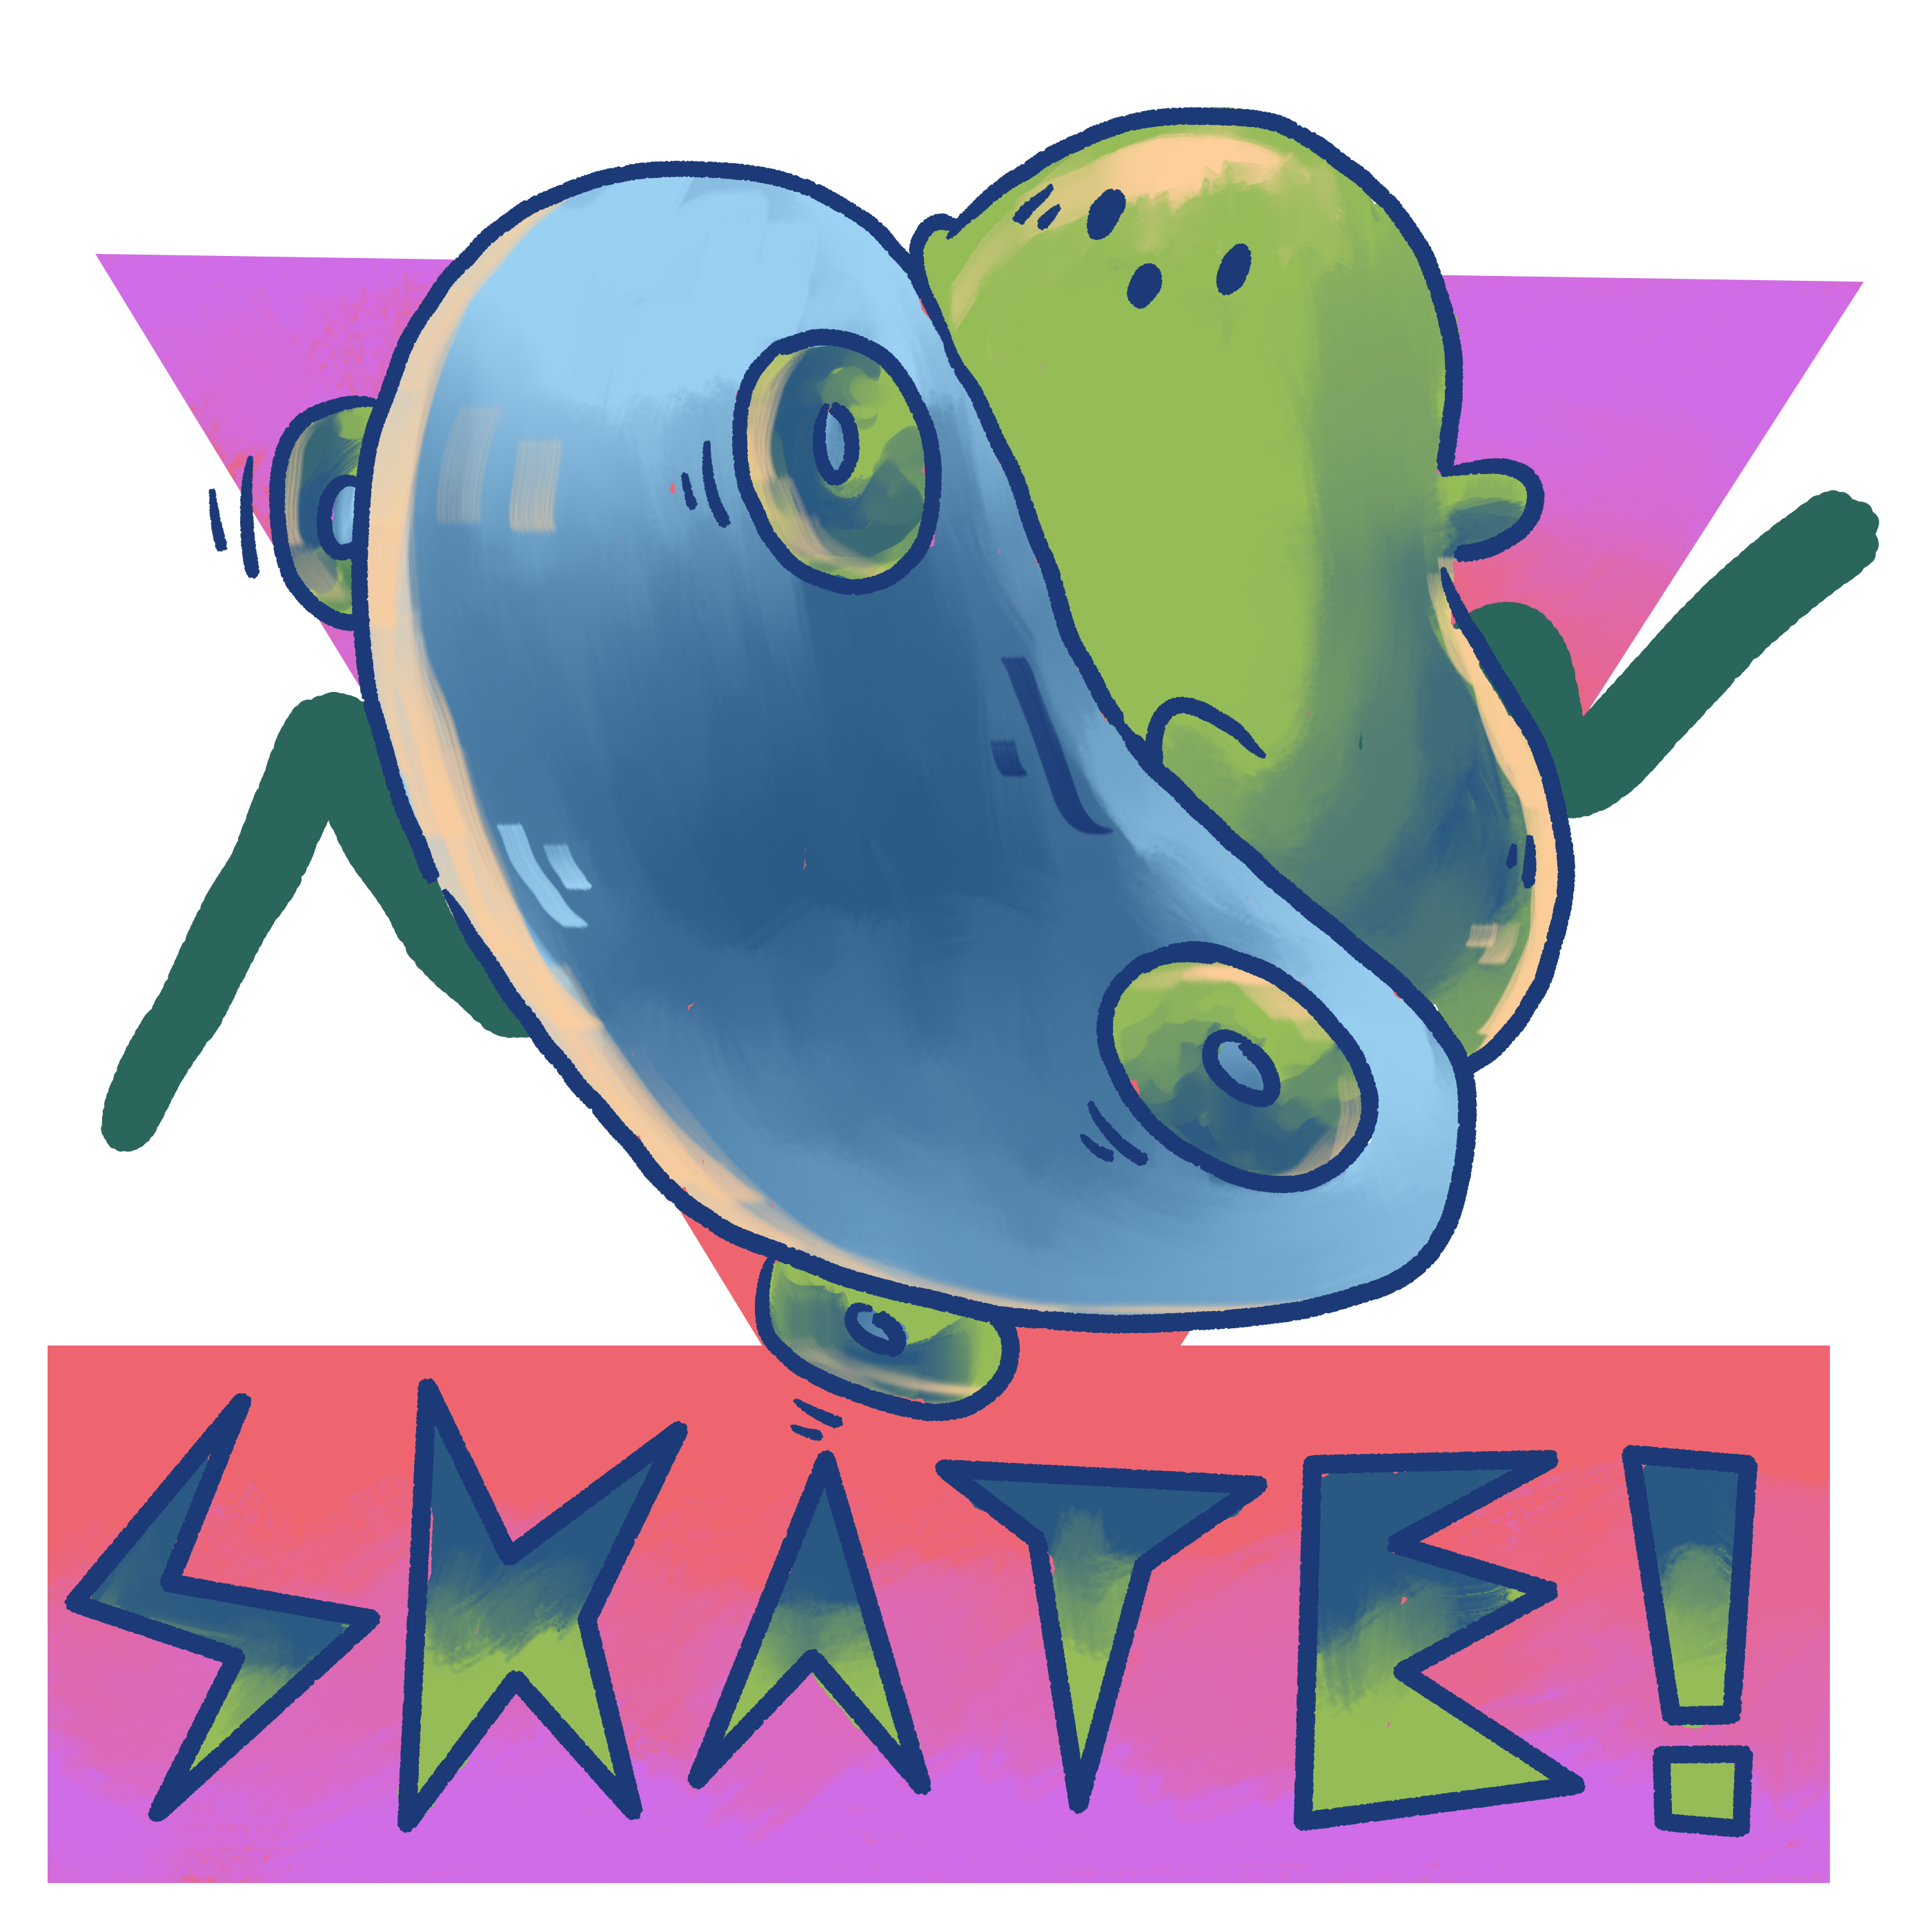 skater blob